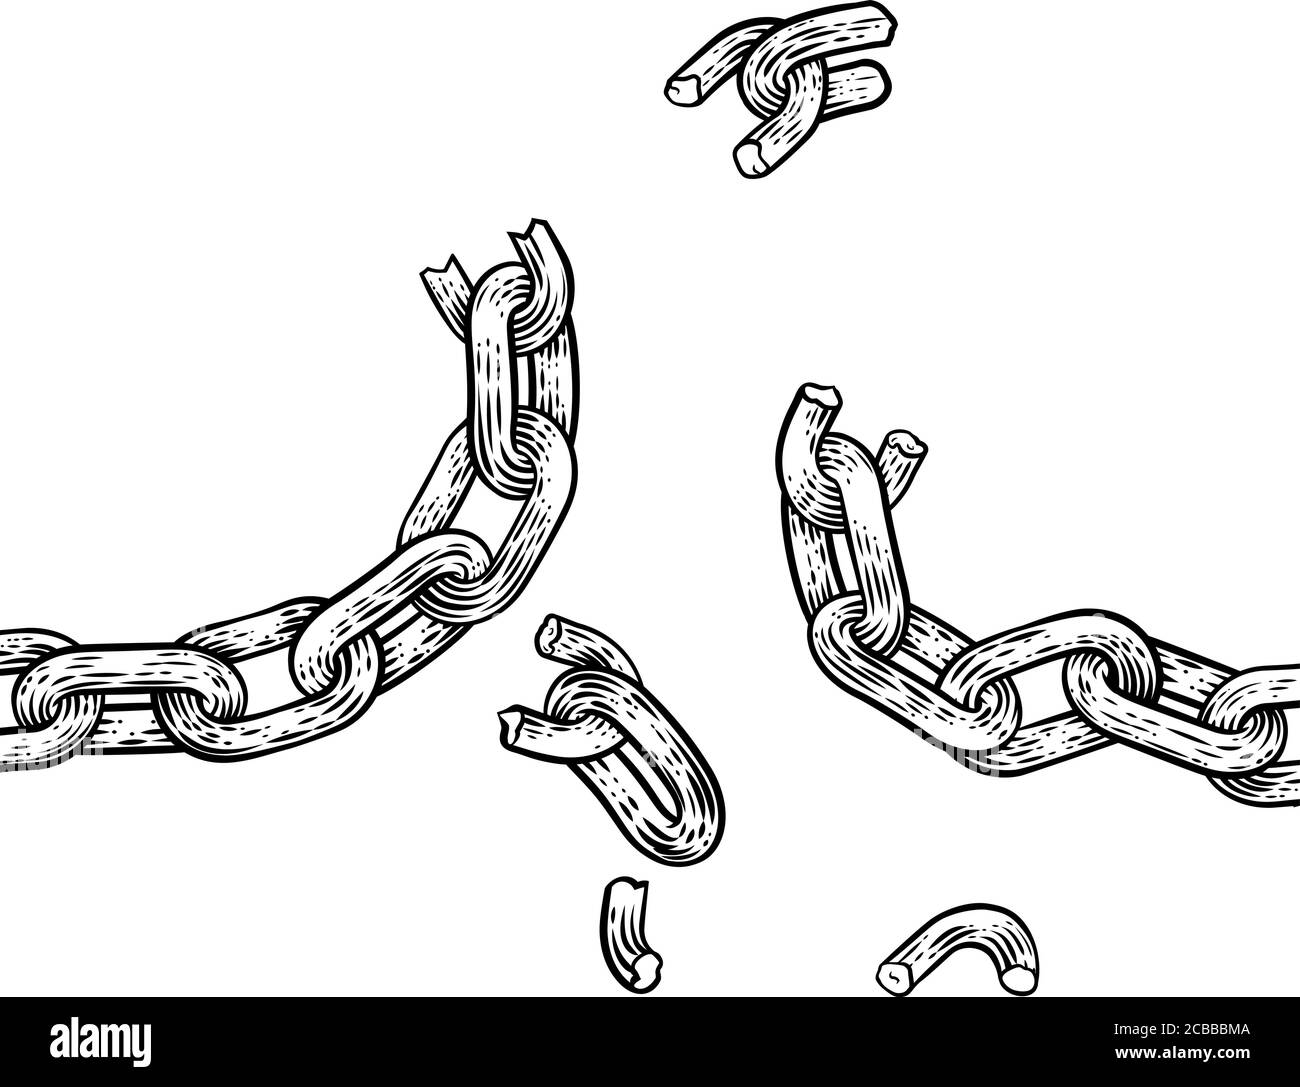 Chain Breaking Freedom Konzept Illustration Stock Vektor